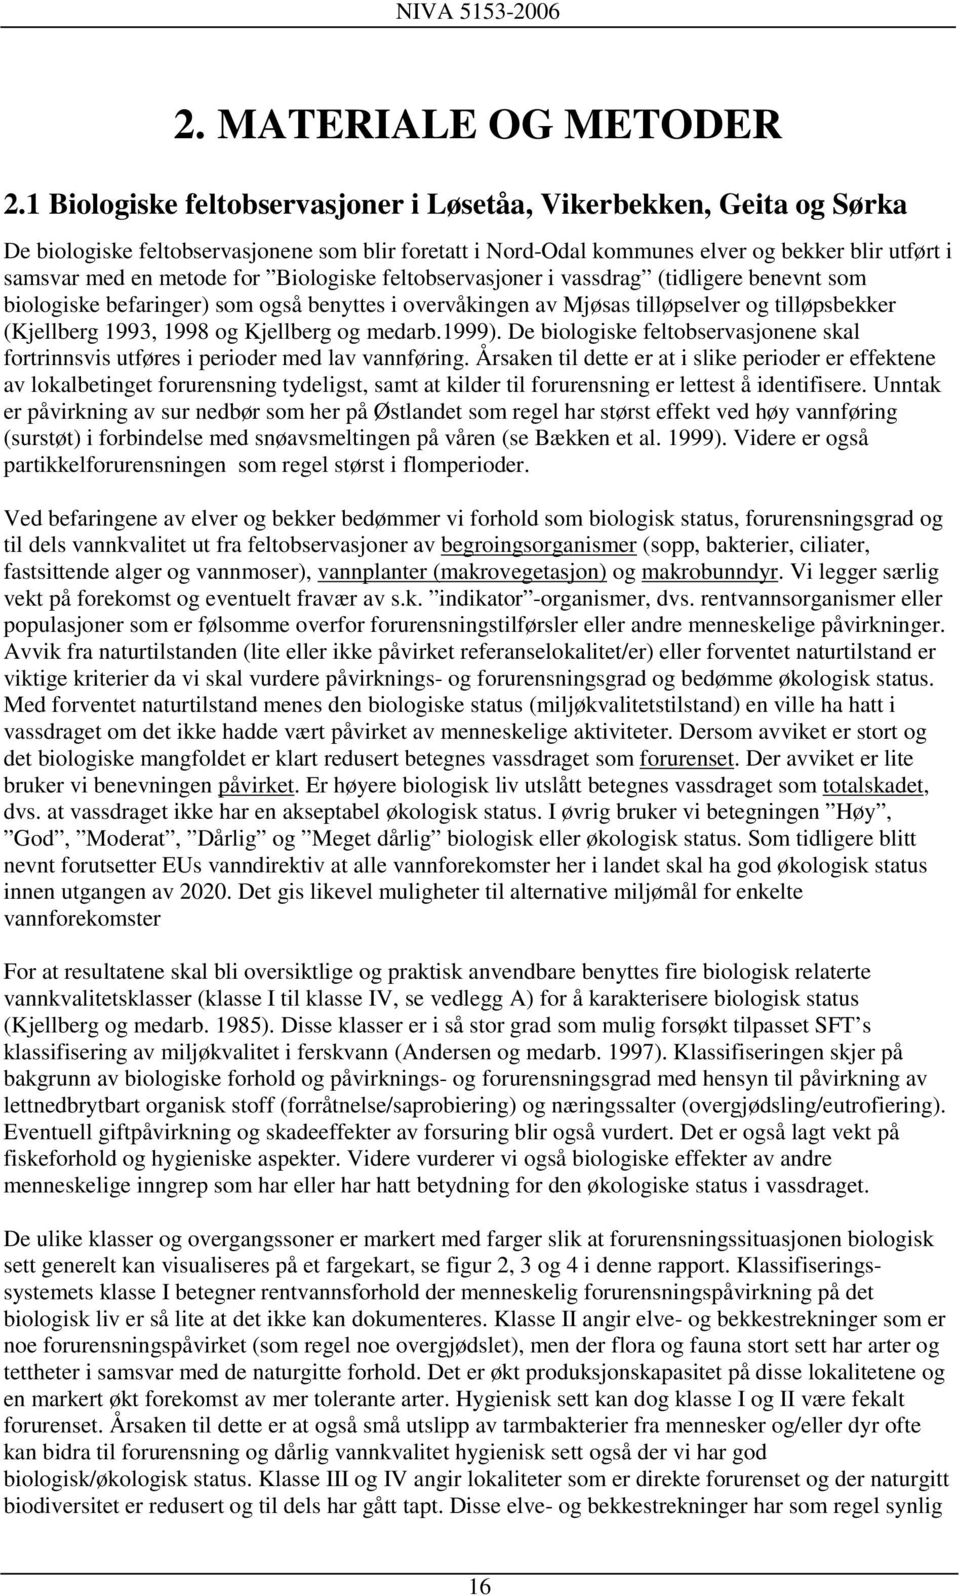 Biologiske feltobservasjoner i vassdrag (tidligere benevnt som biologiske befaringer) som også benyttes i overvåkingen av Mjøsas tilløpselver og tilløpsbekker (Kjellberg 1993, 1998 og Kjellberg og